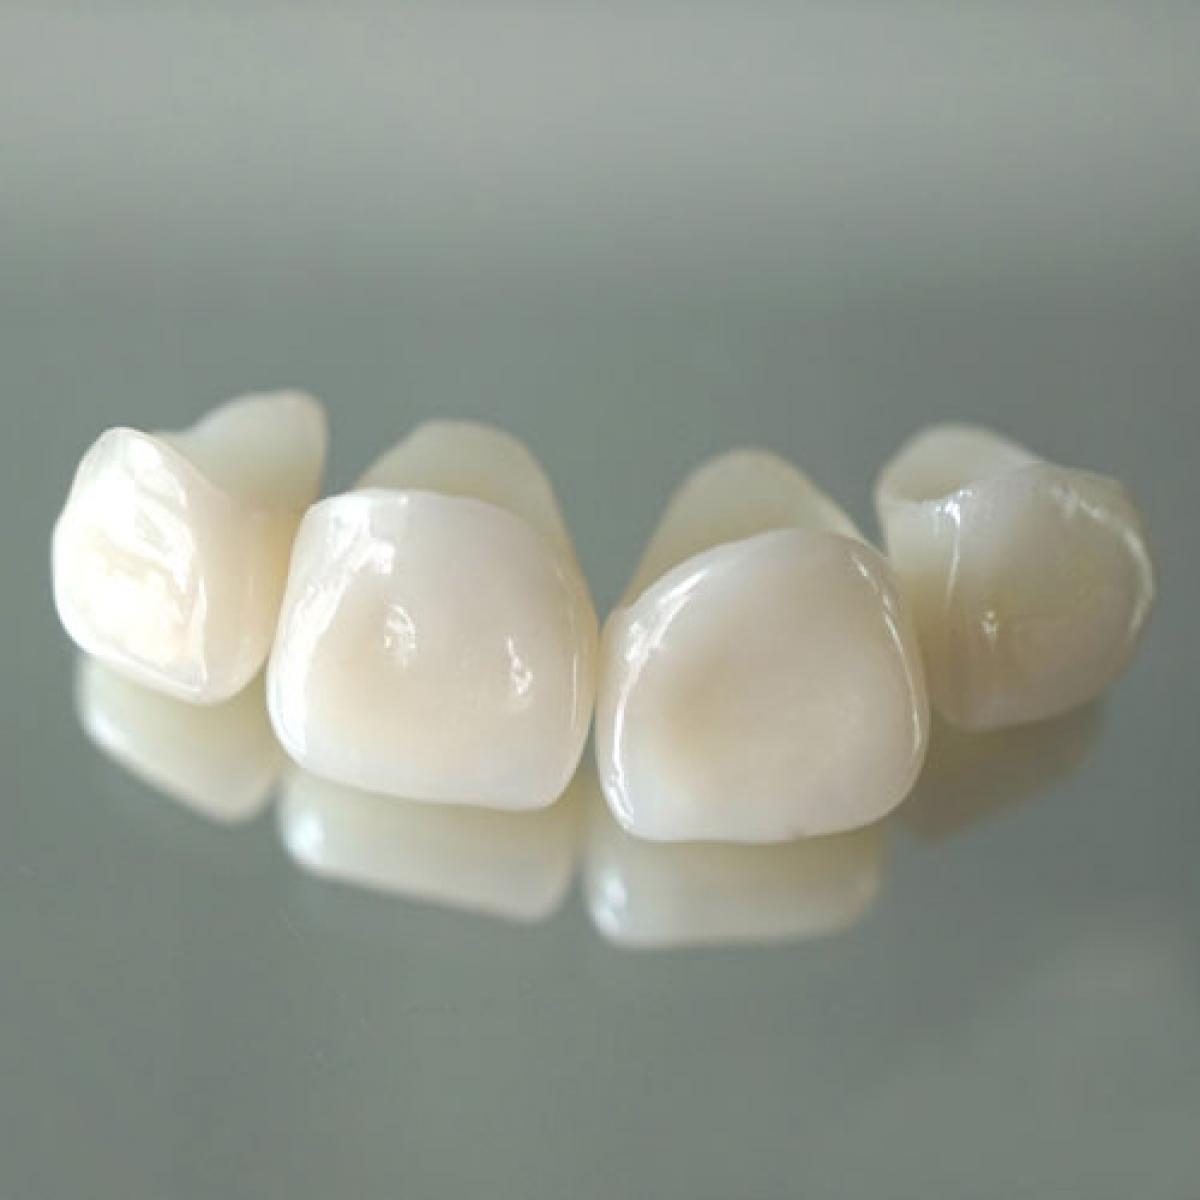 коронки для зубов керамика фото